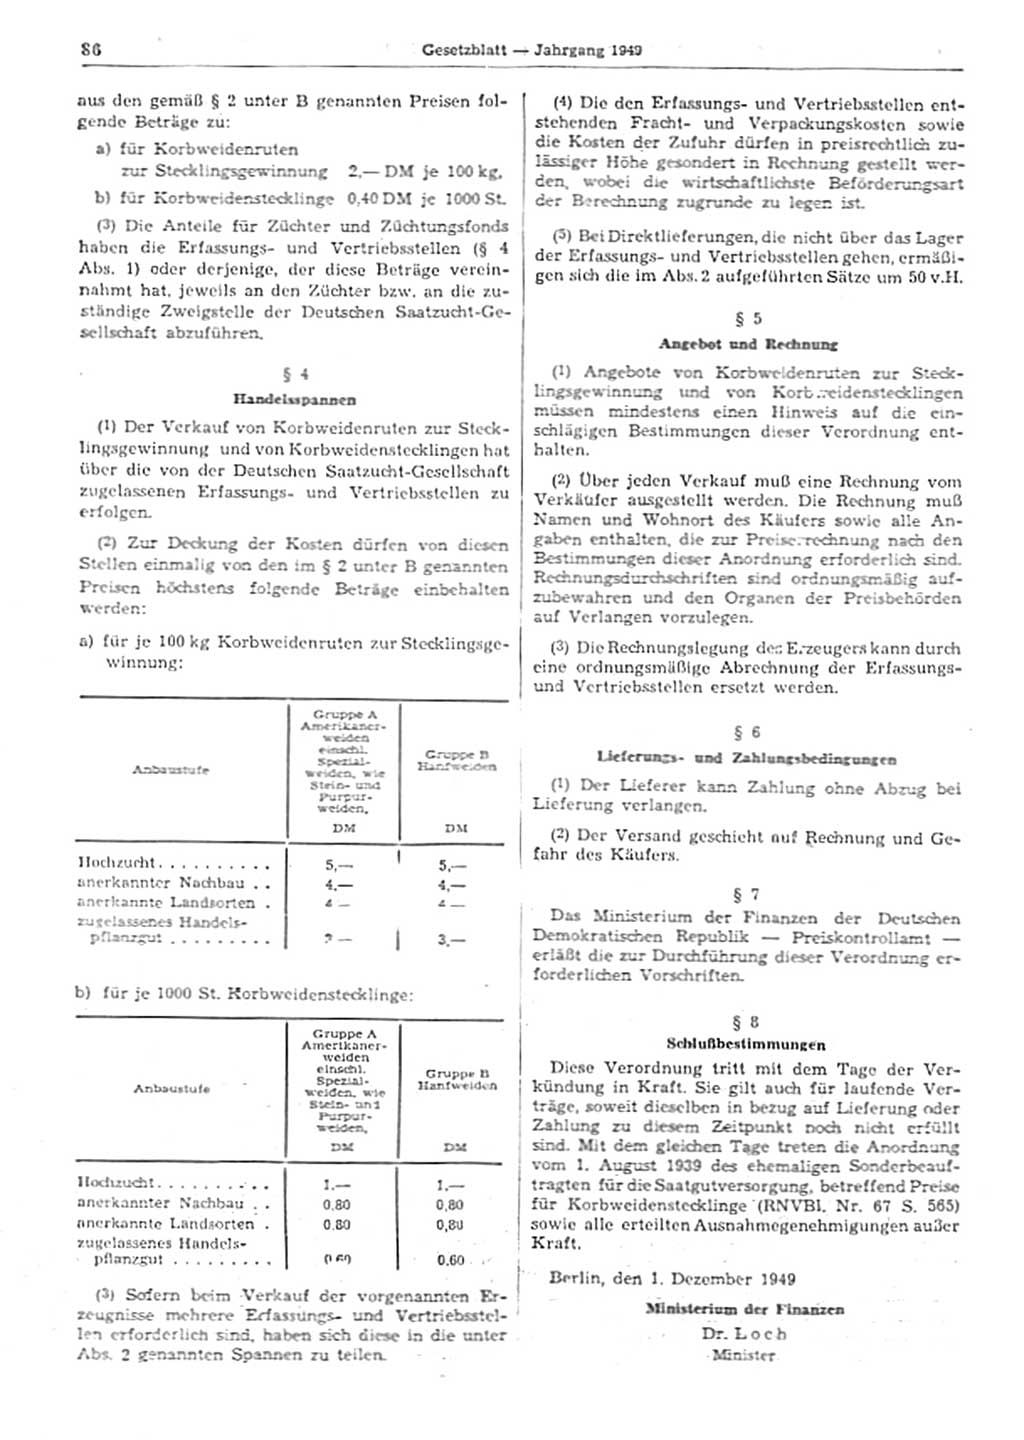 Gesetzblatt (GBl.) der Deutschen Demokratischen Republik (DDR) 1949, Seite 86 (GBl. DDR 1949, S. 86)